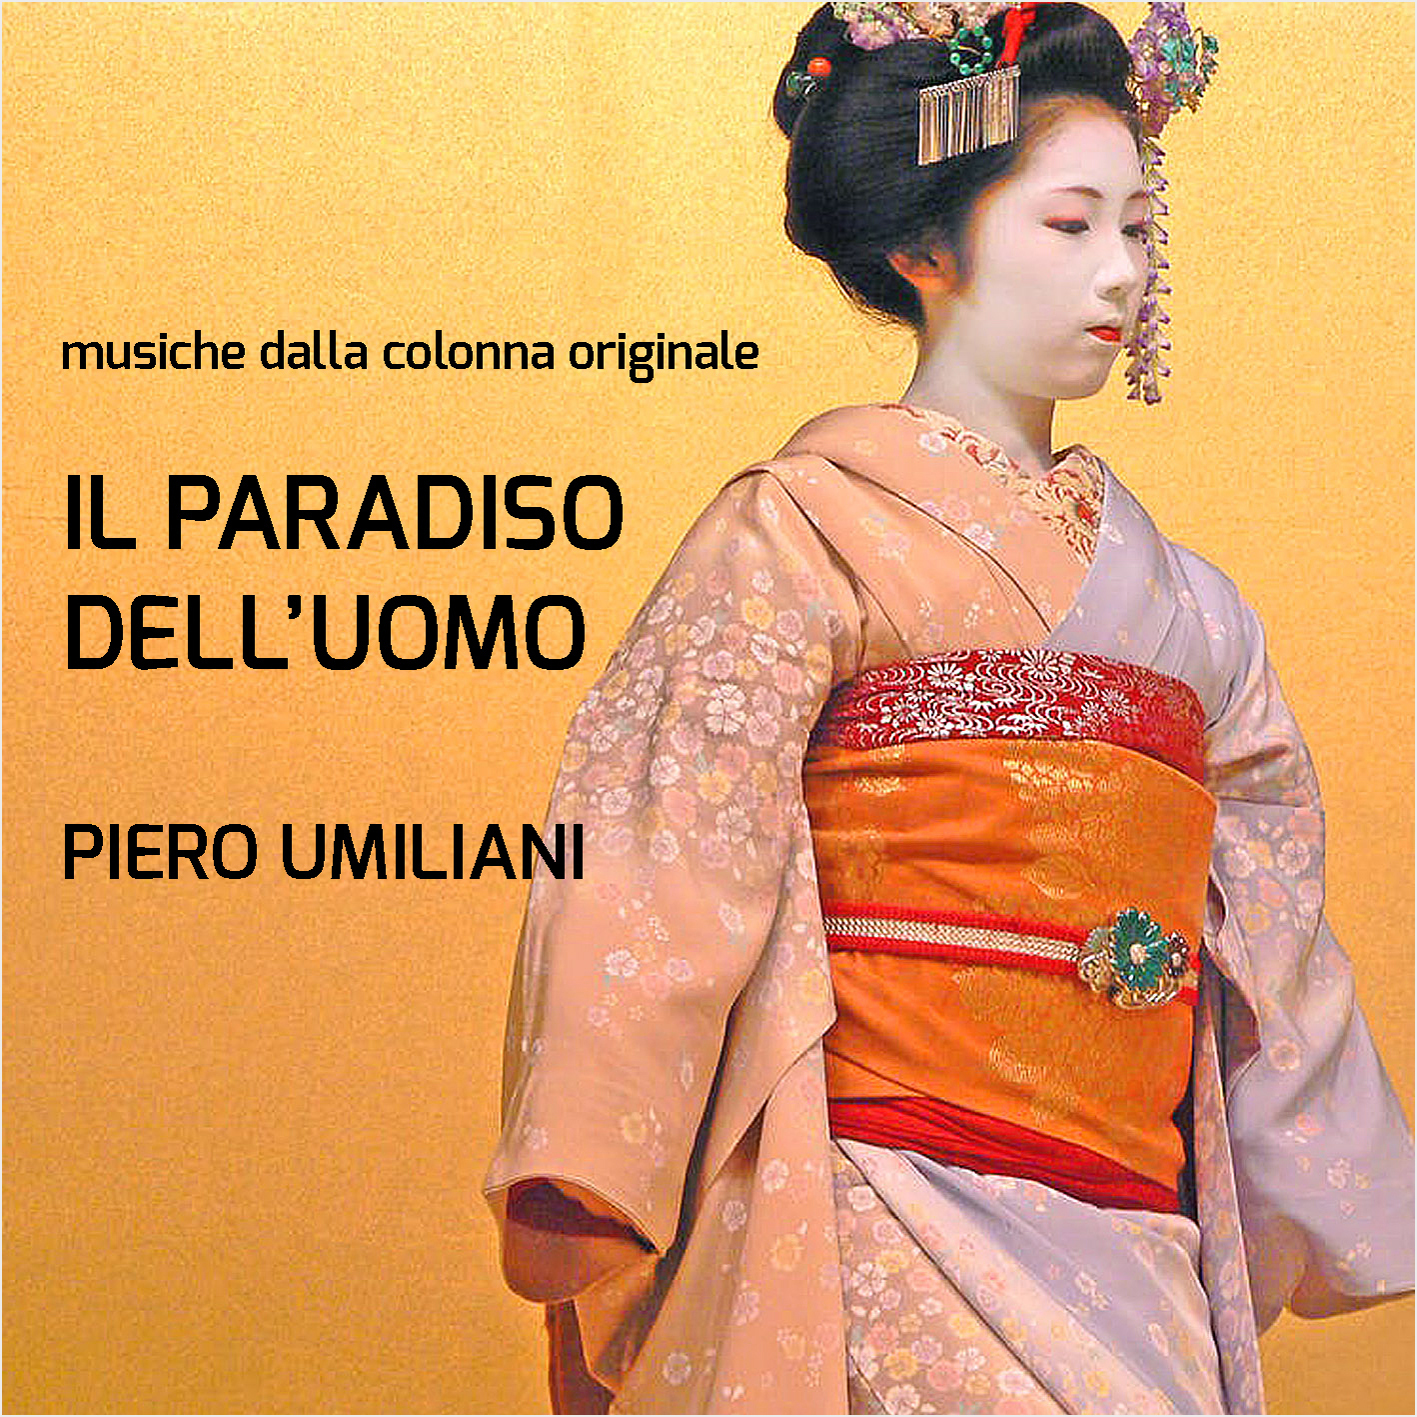 Il Paradiso Dell'Uomo (Man's Paradise) by Piero Umiliani